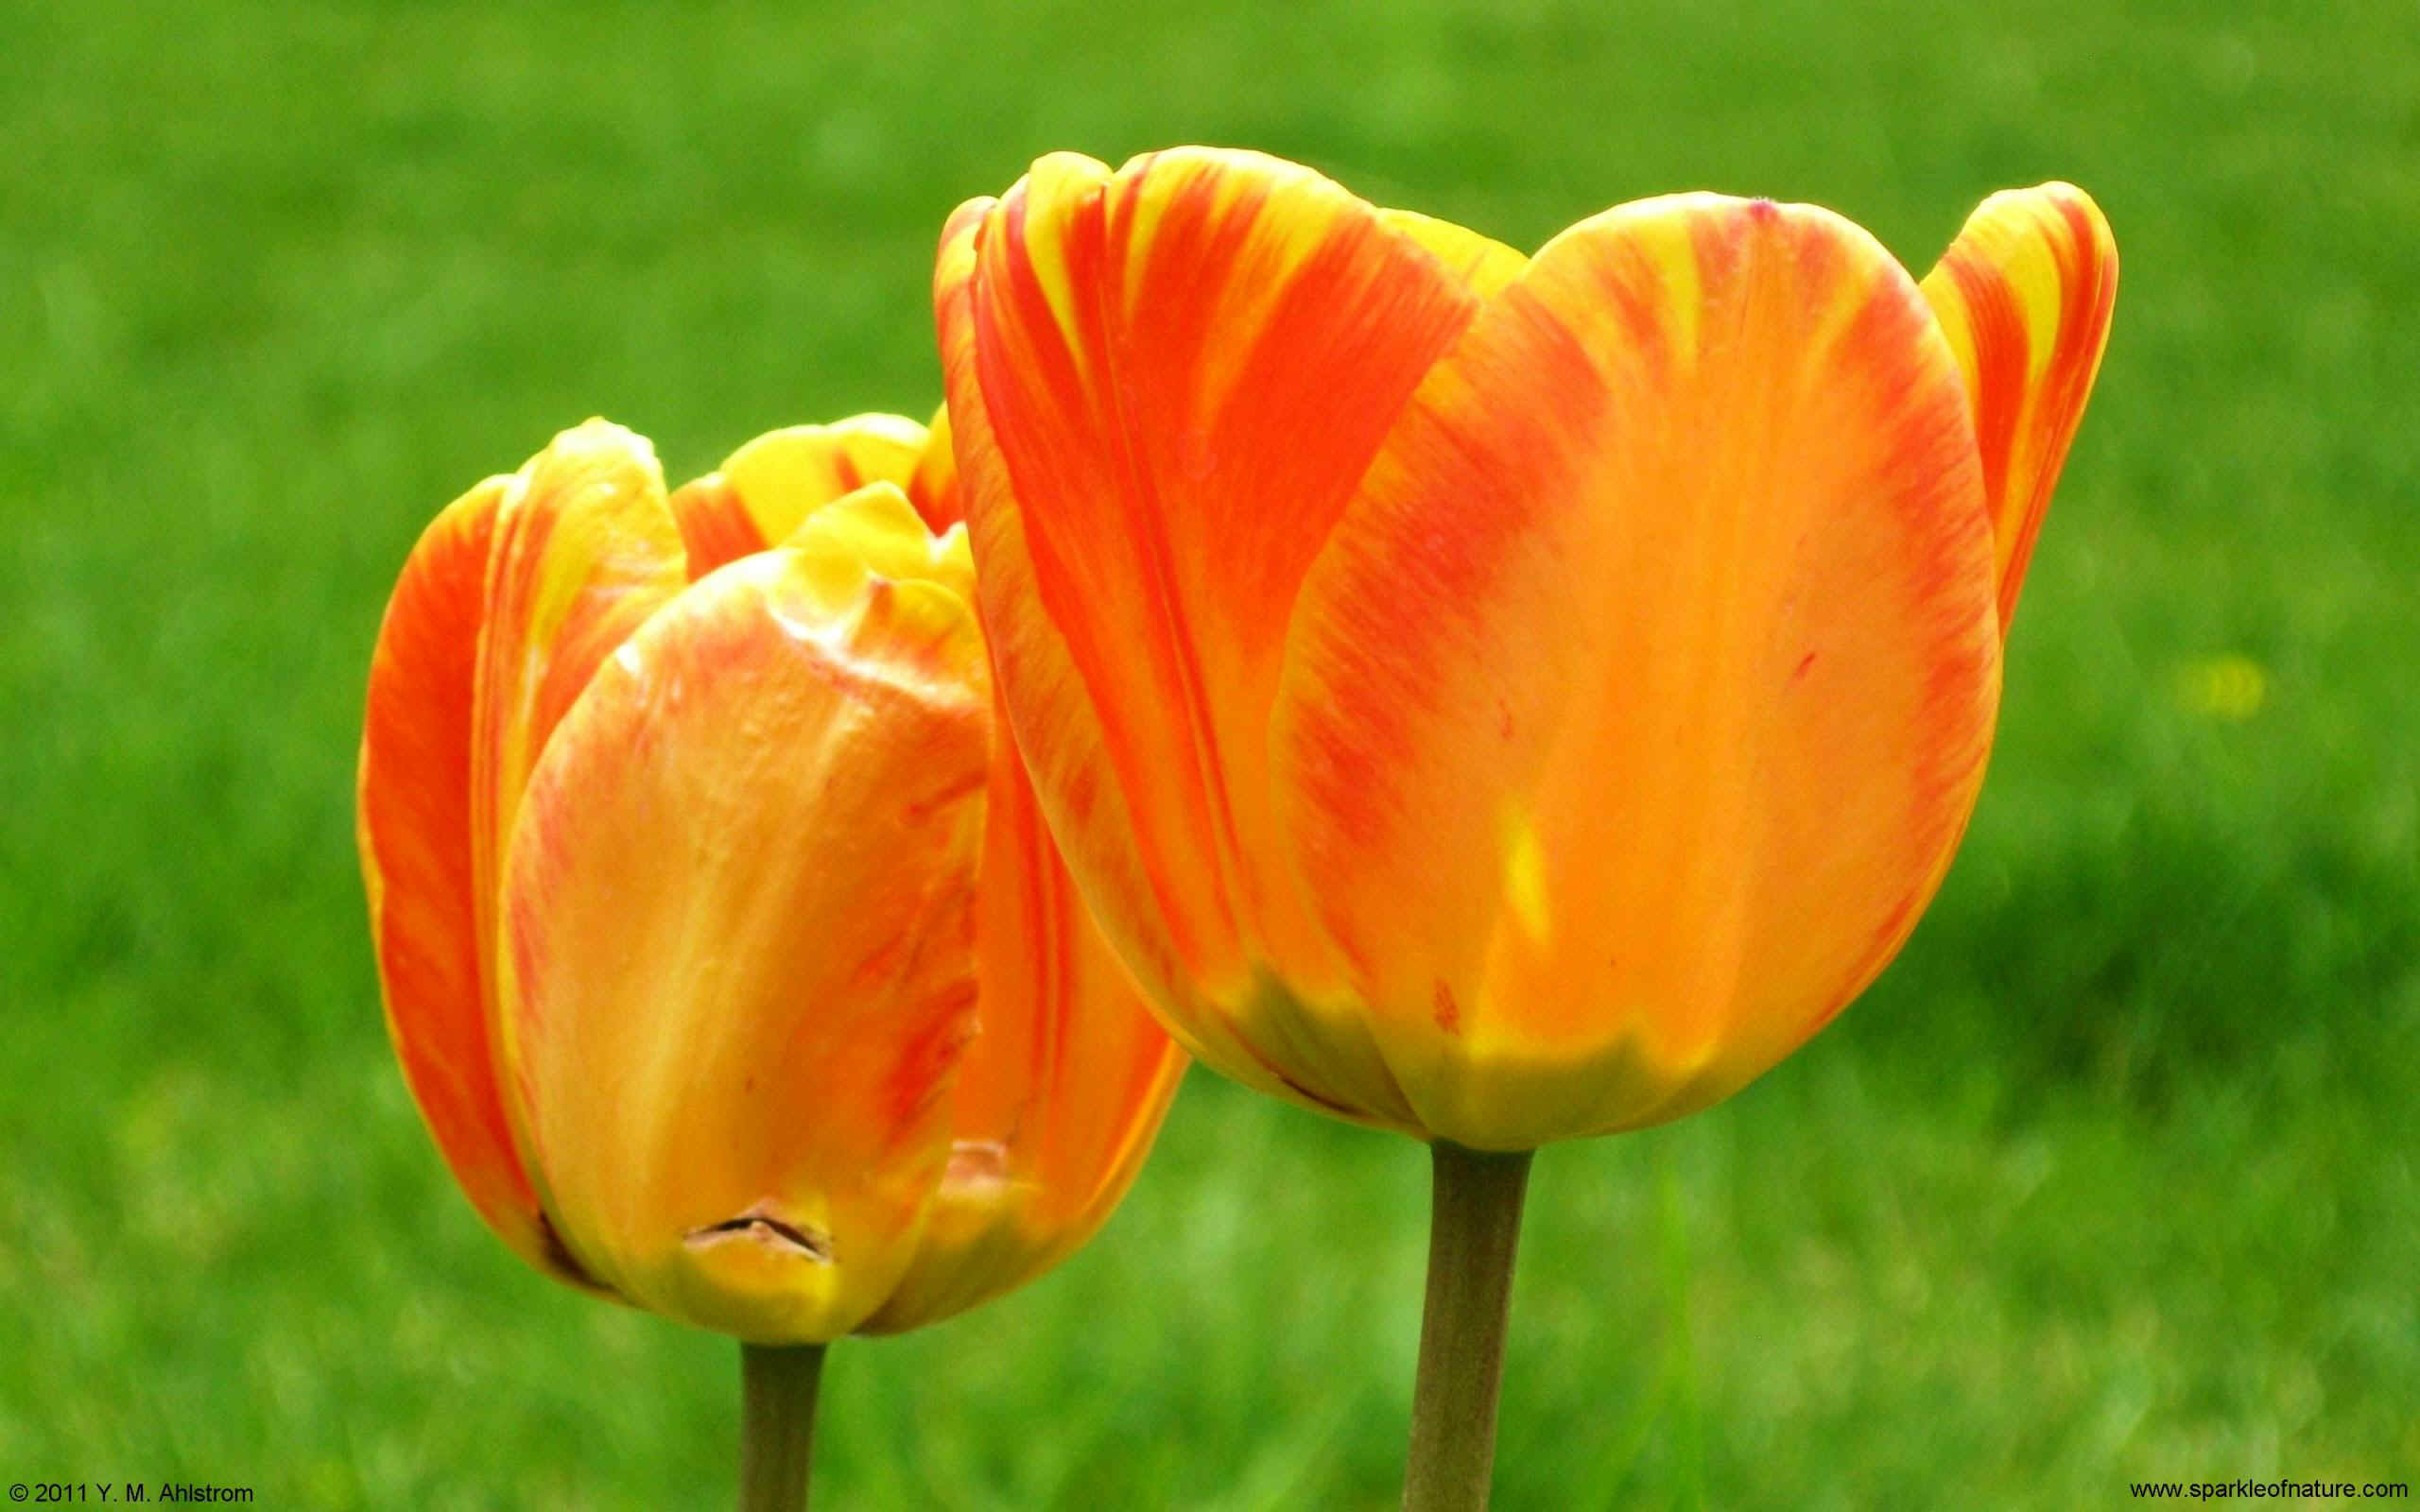 23519 two tulips w 2560x1600.jpg (333485 bytes)